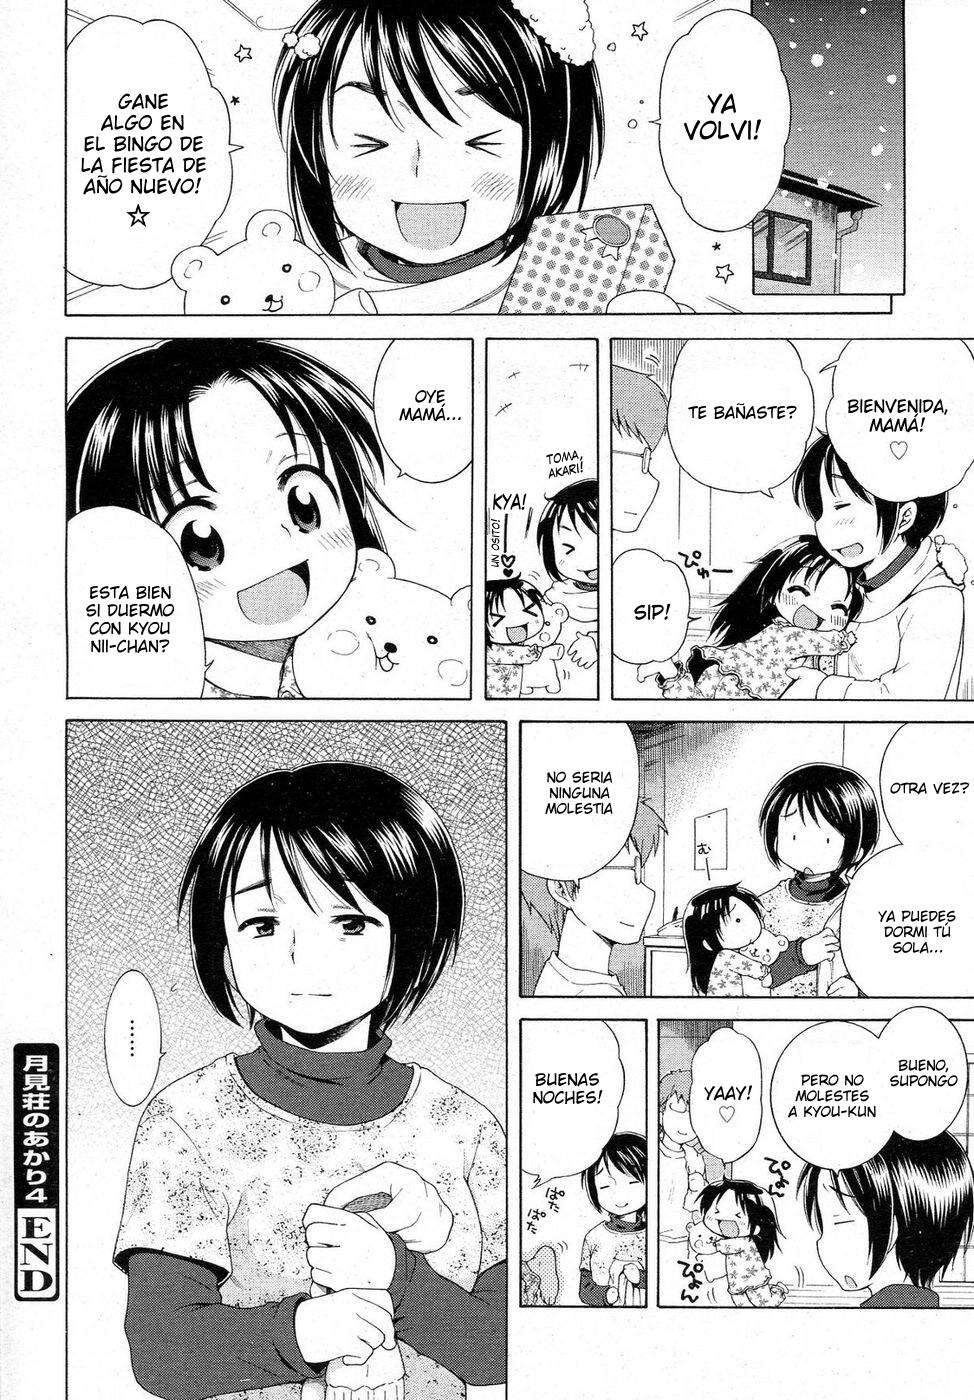 Tsukimisou No Akari (La Luz Del Apartamento Tsukimi) Chapter-4 - 23